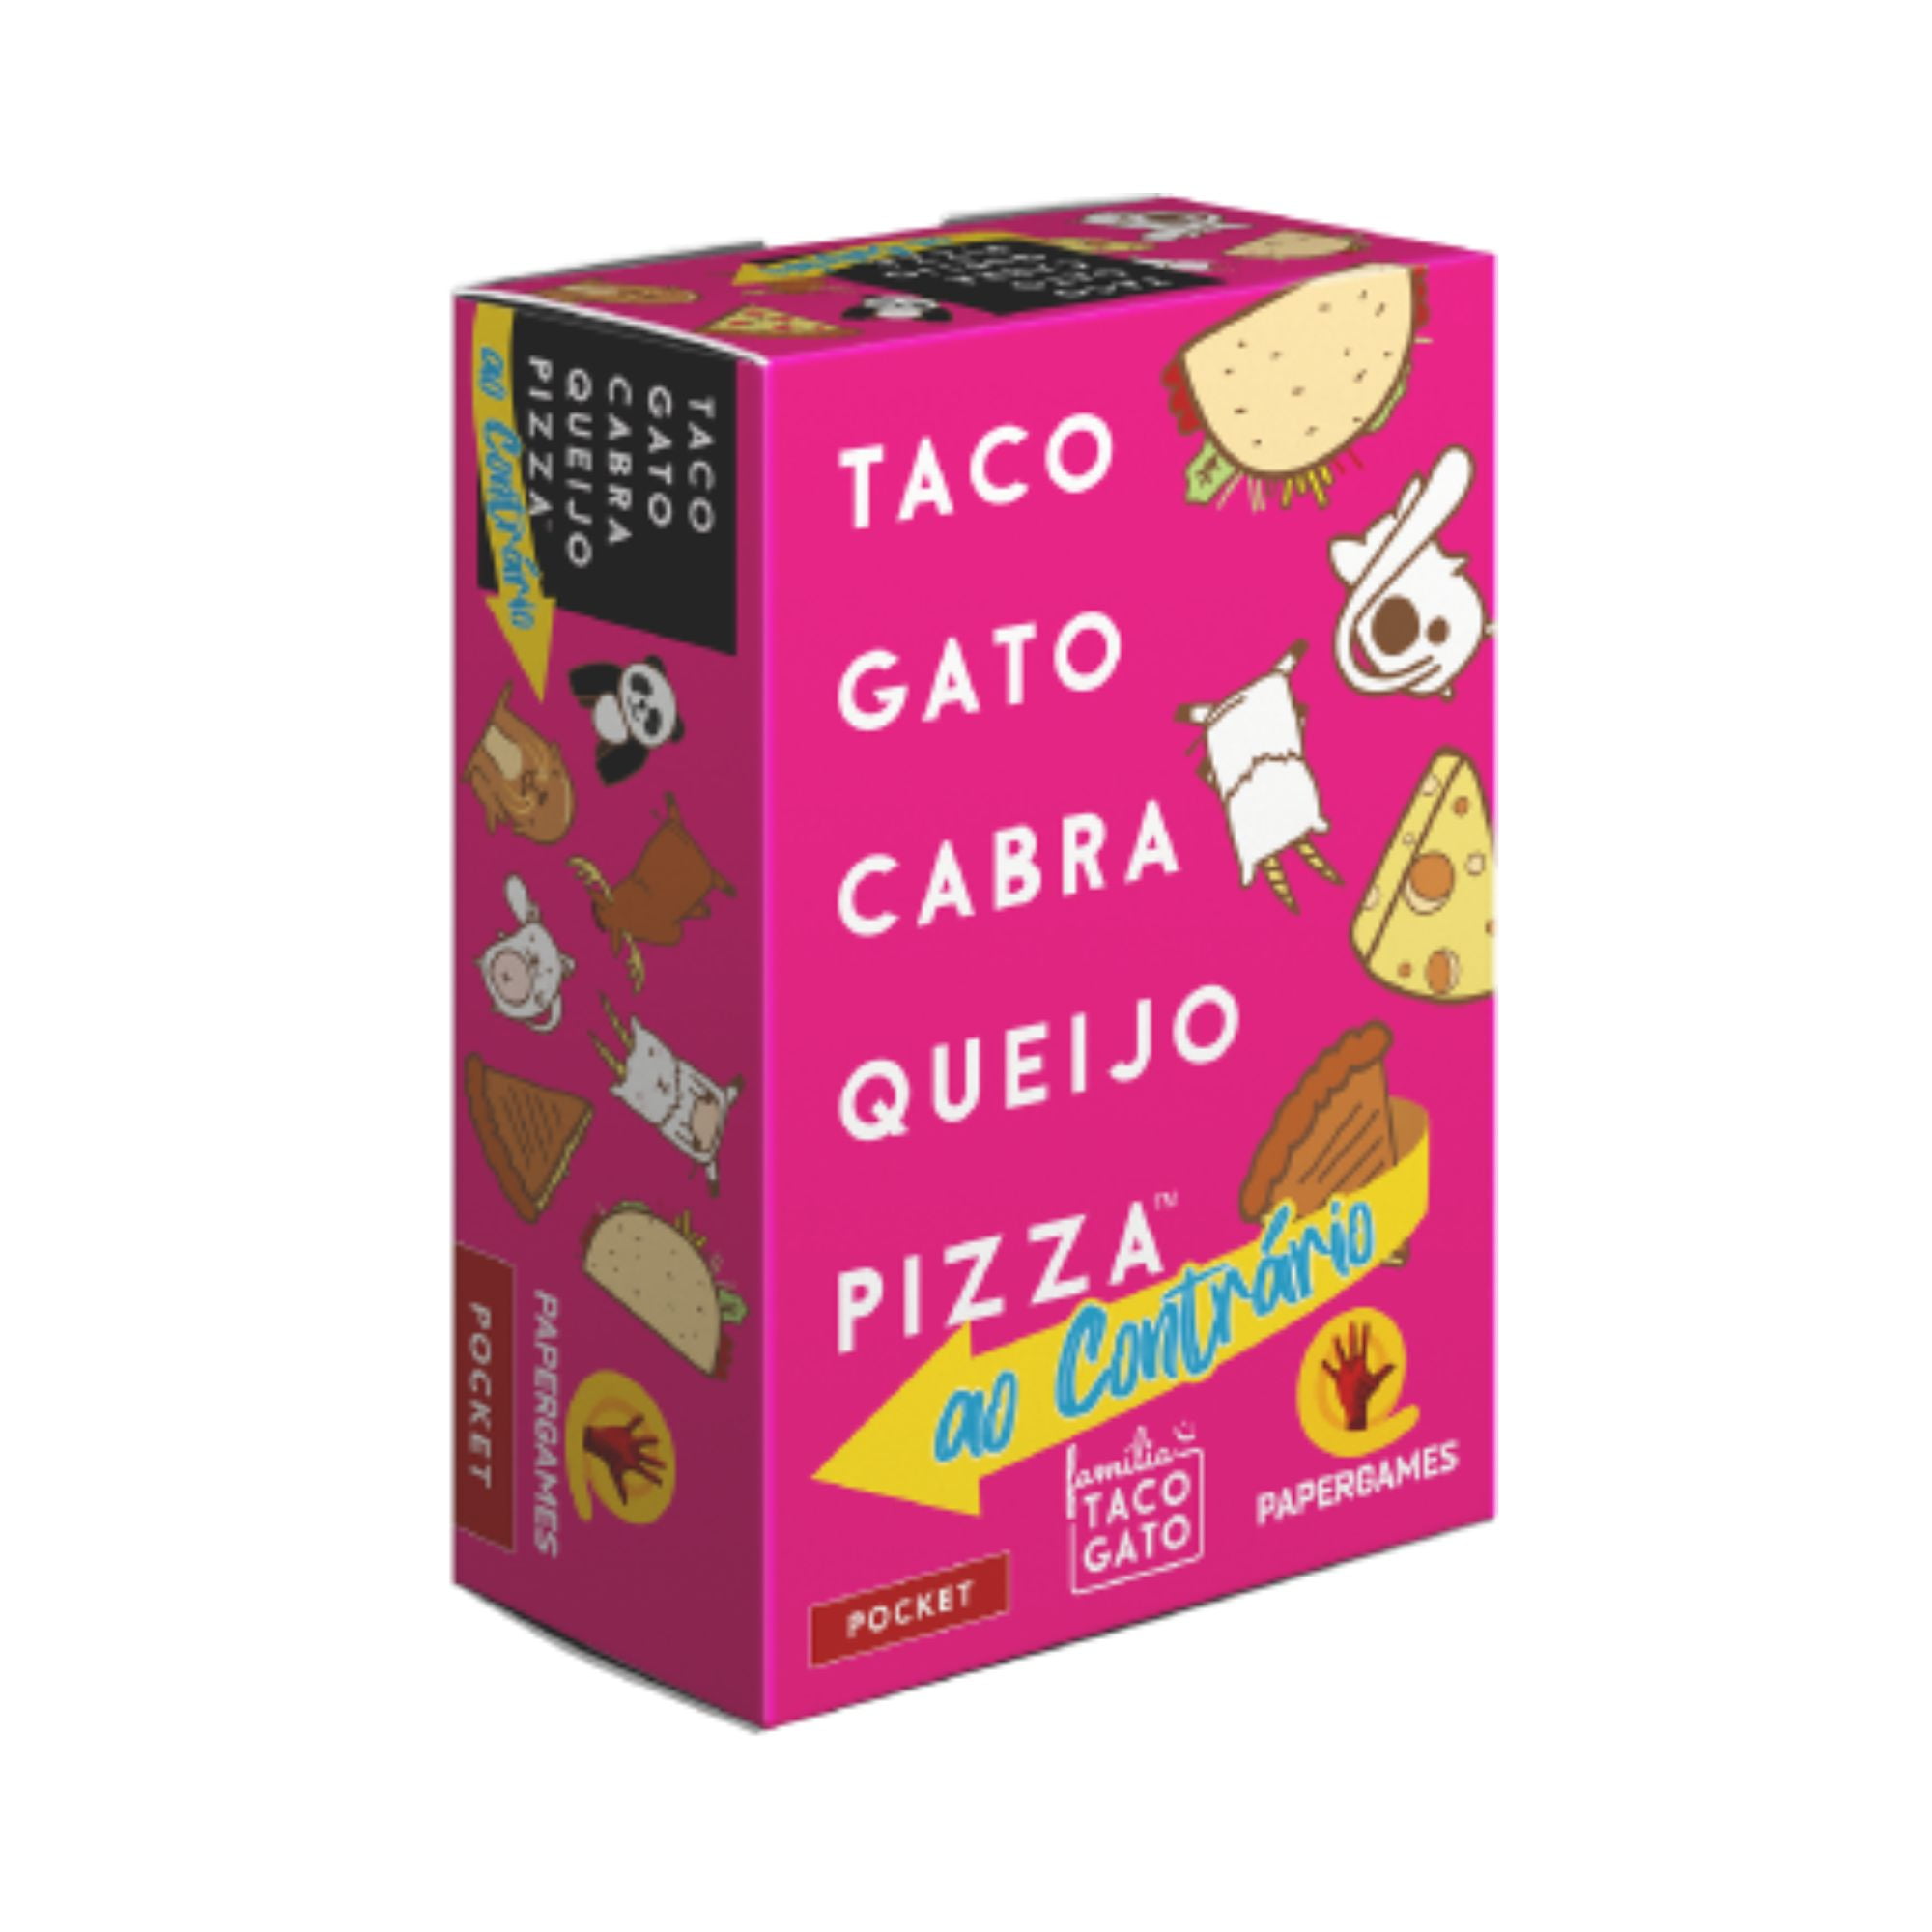 Taco Gato Cabra Queijo Pizza: Ao Contrário + Expansão ELEFANTE